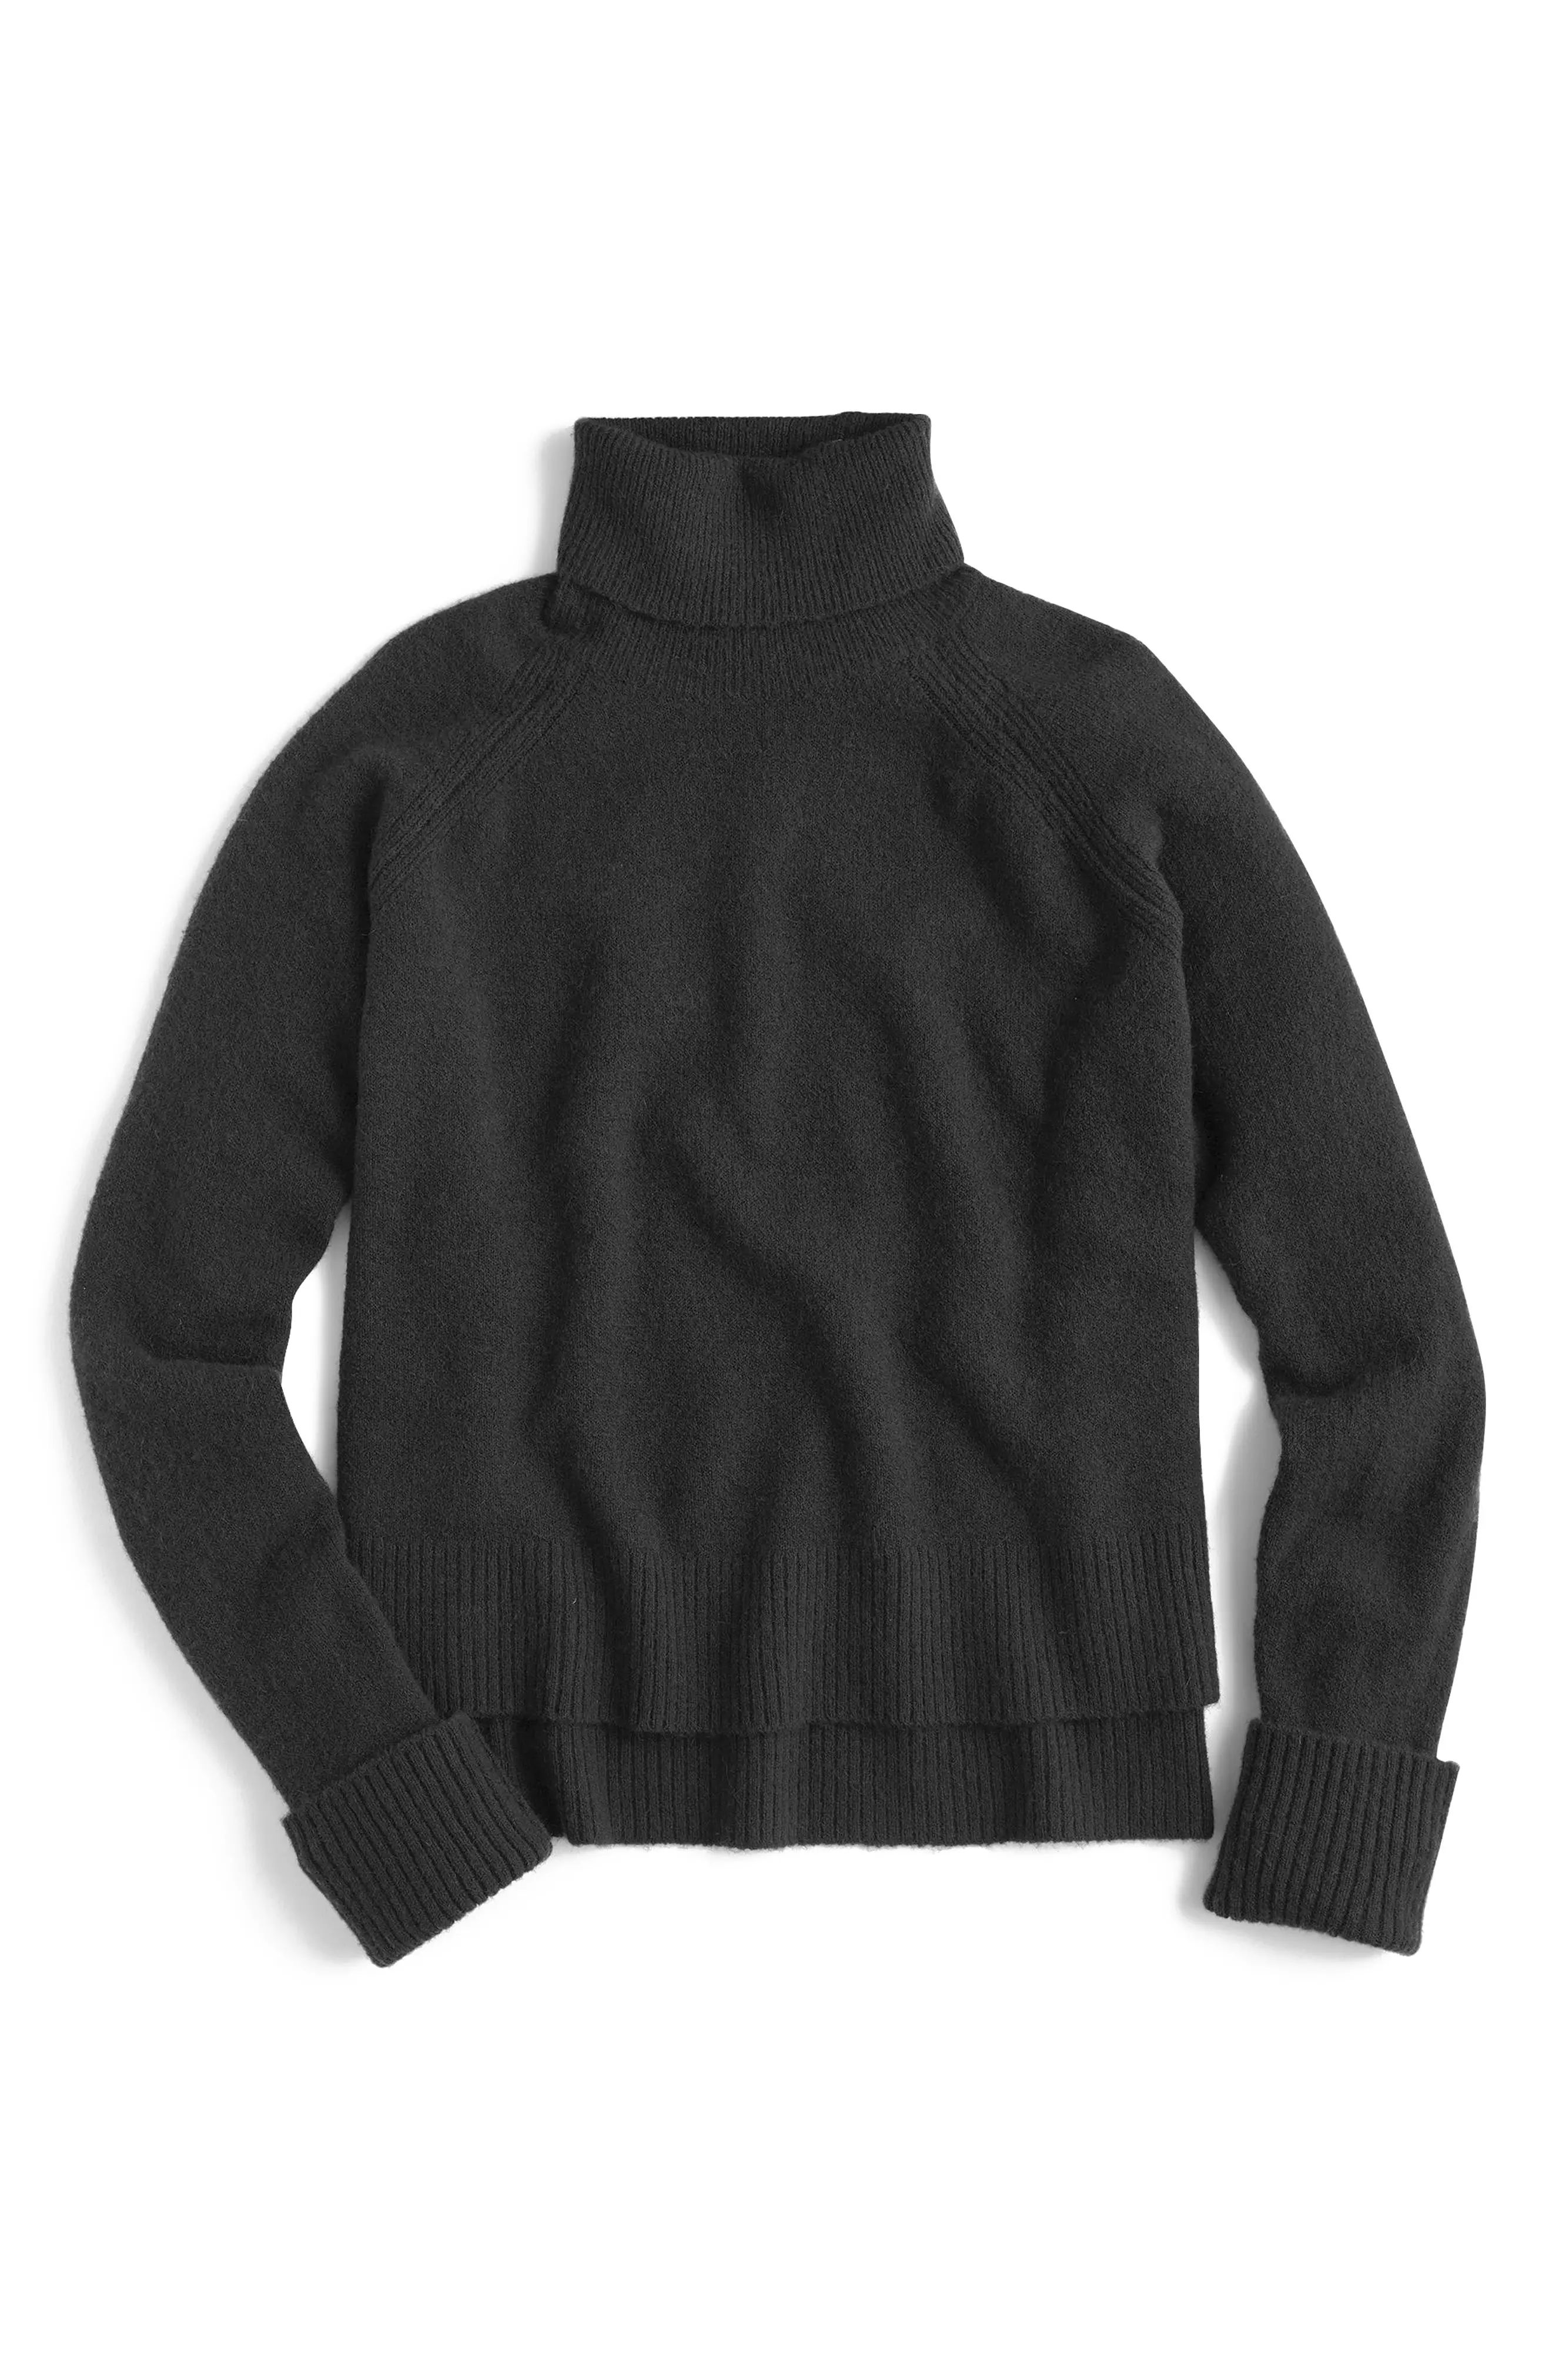 J.Crew Side Slit Supersoft Turtleneck Sweater | Nordstrom